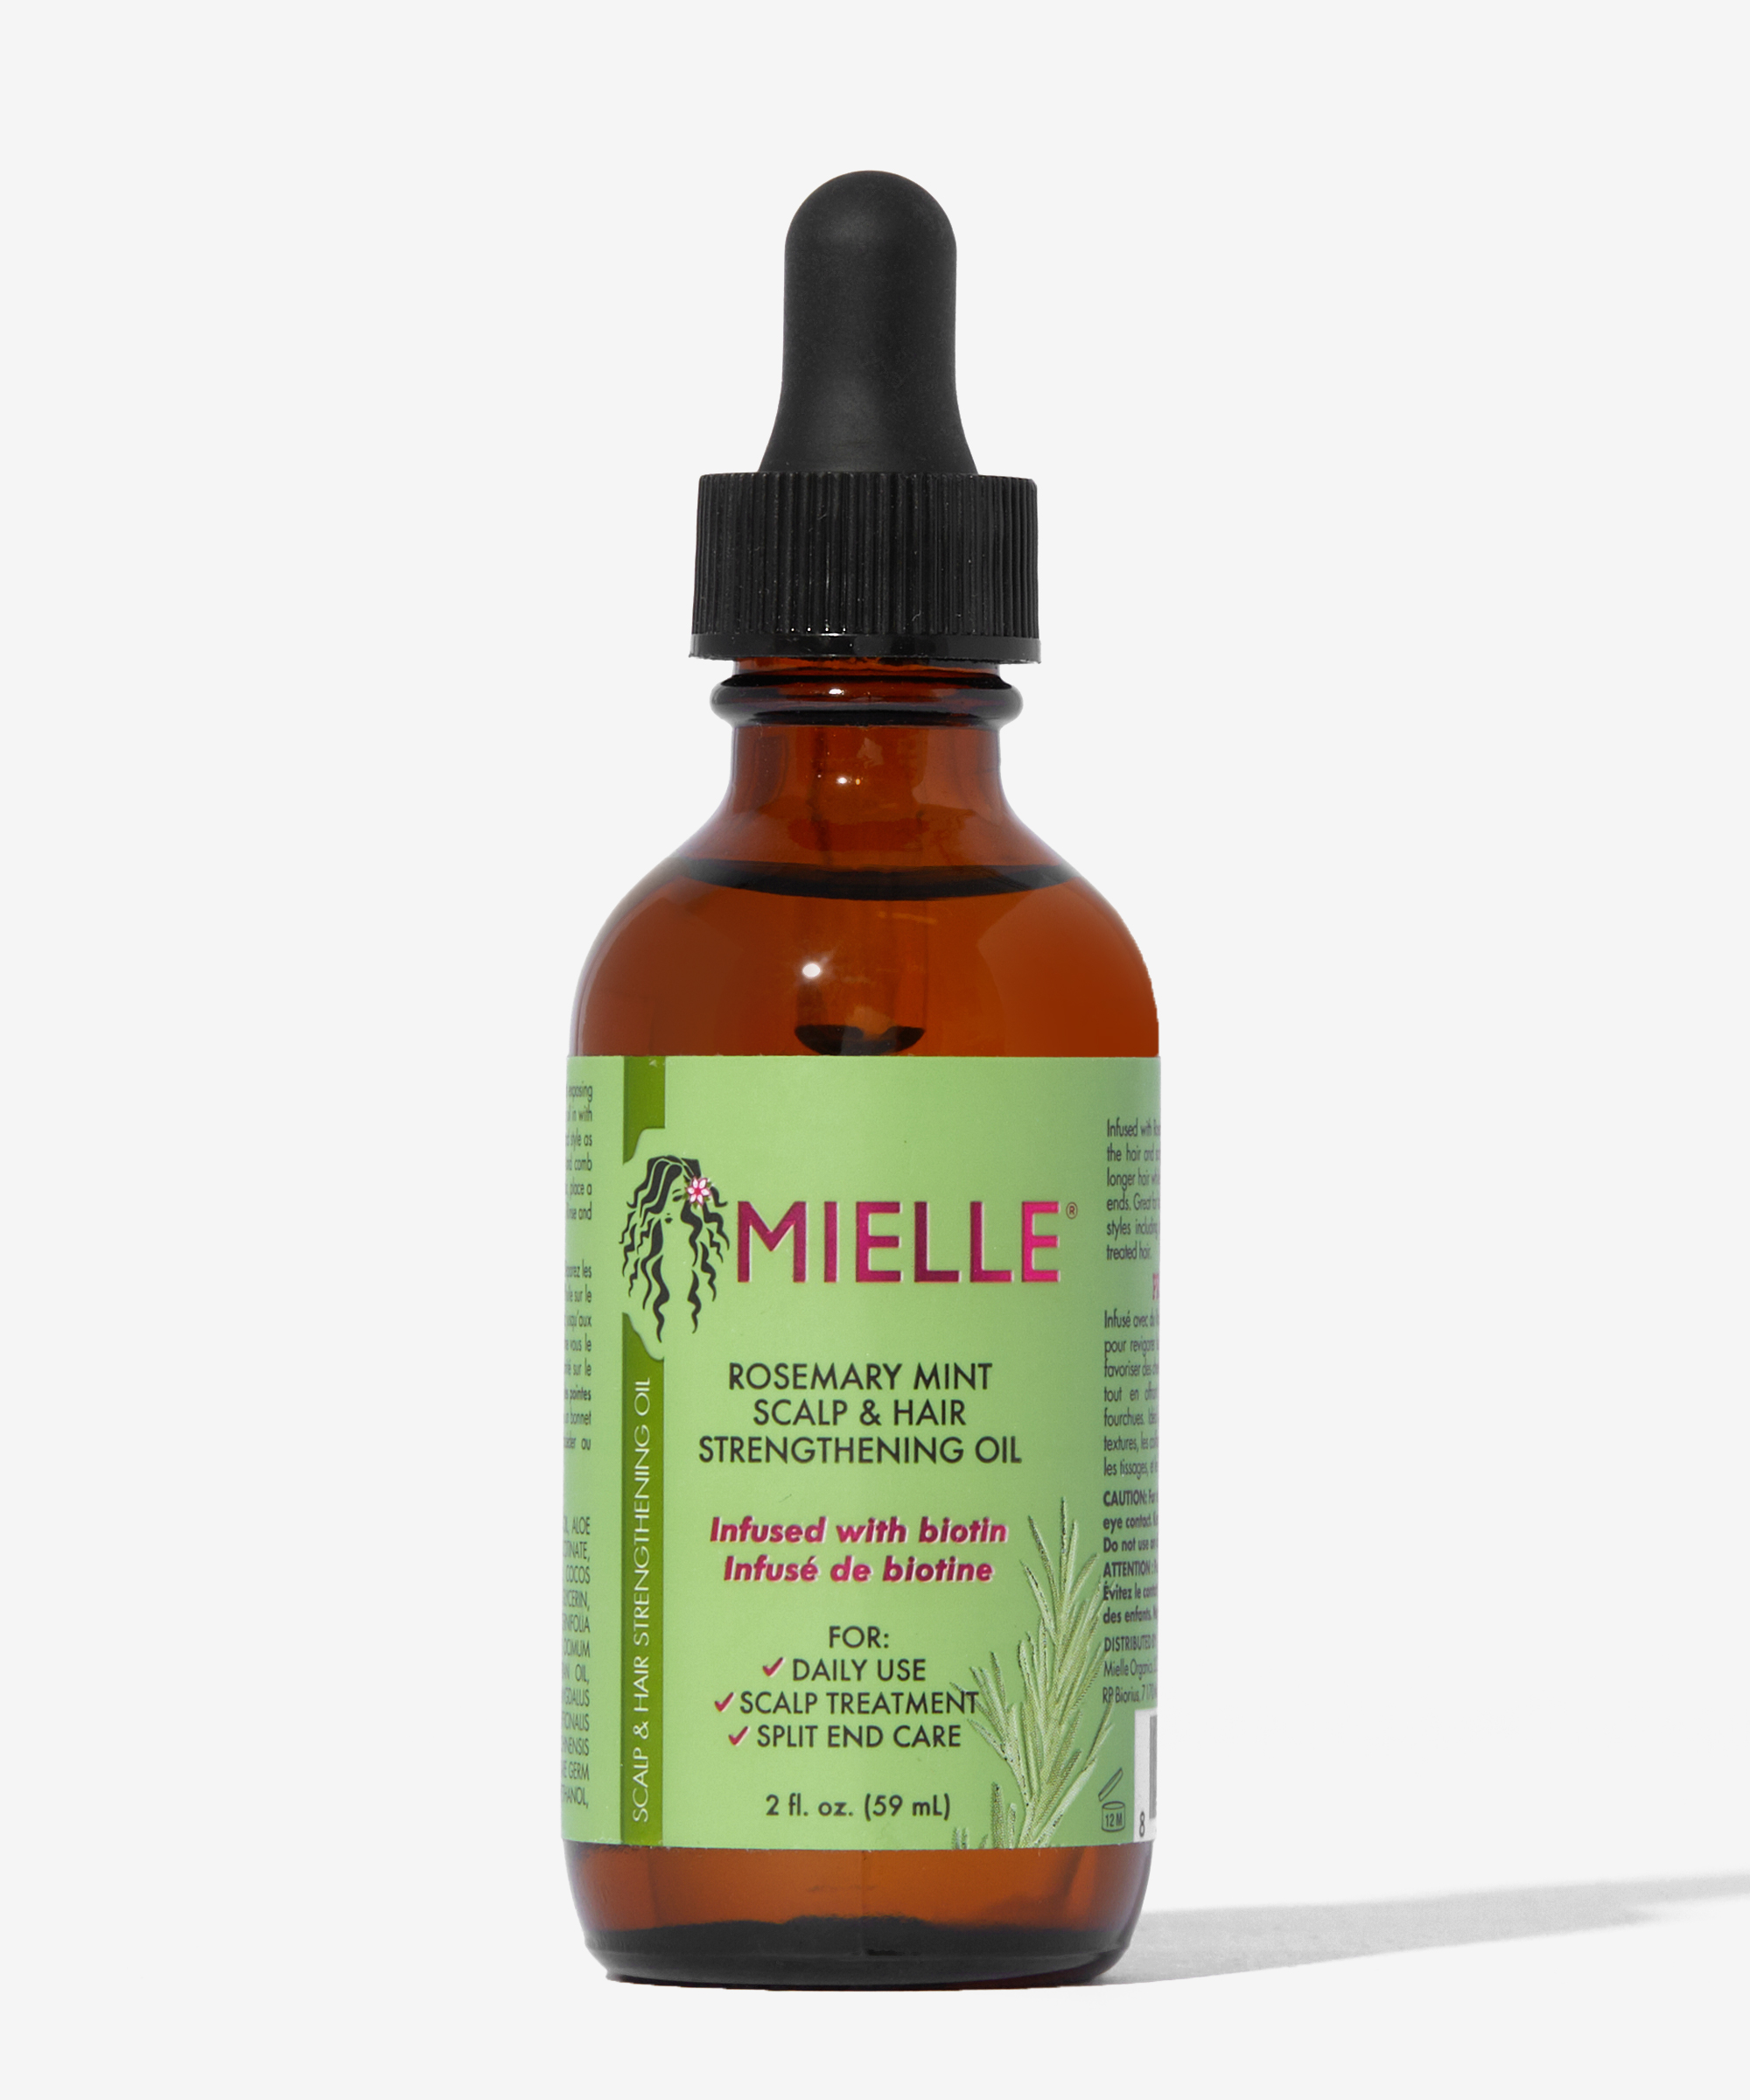  Mielle Scalp & Hair Strengthening Oil Rosemary Mint